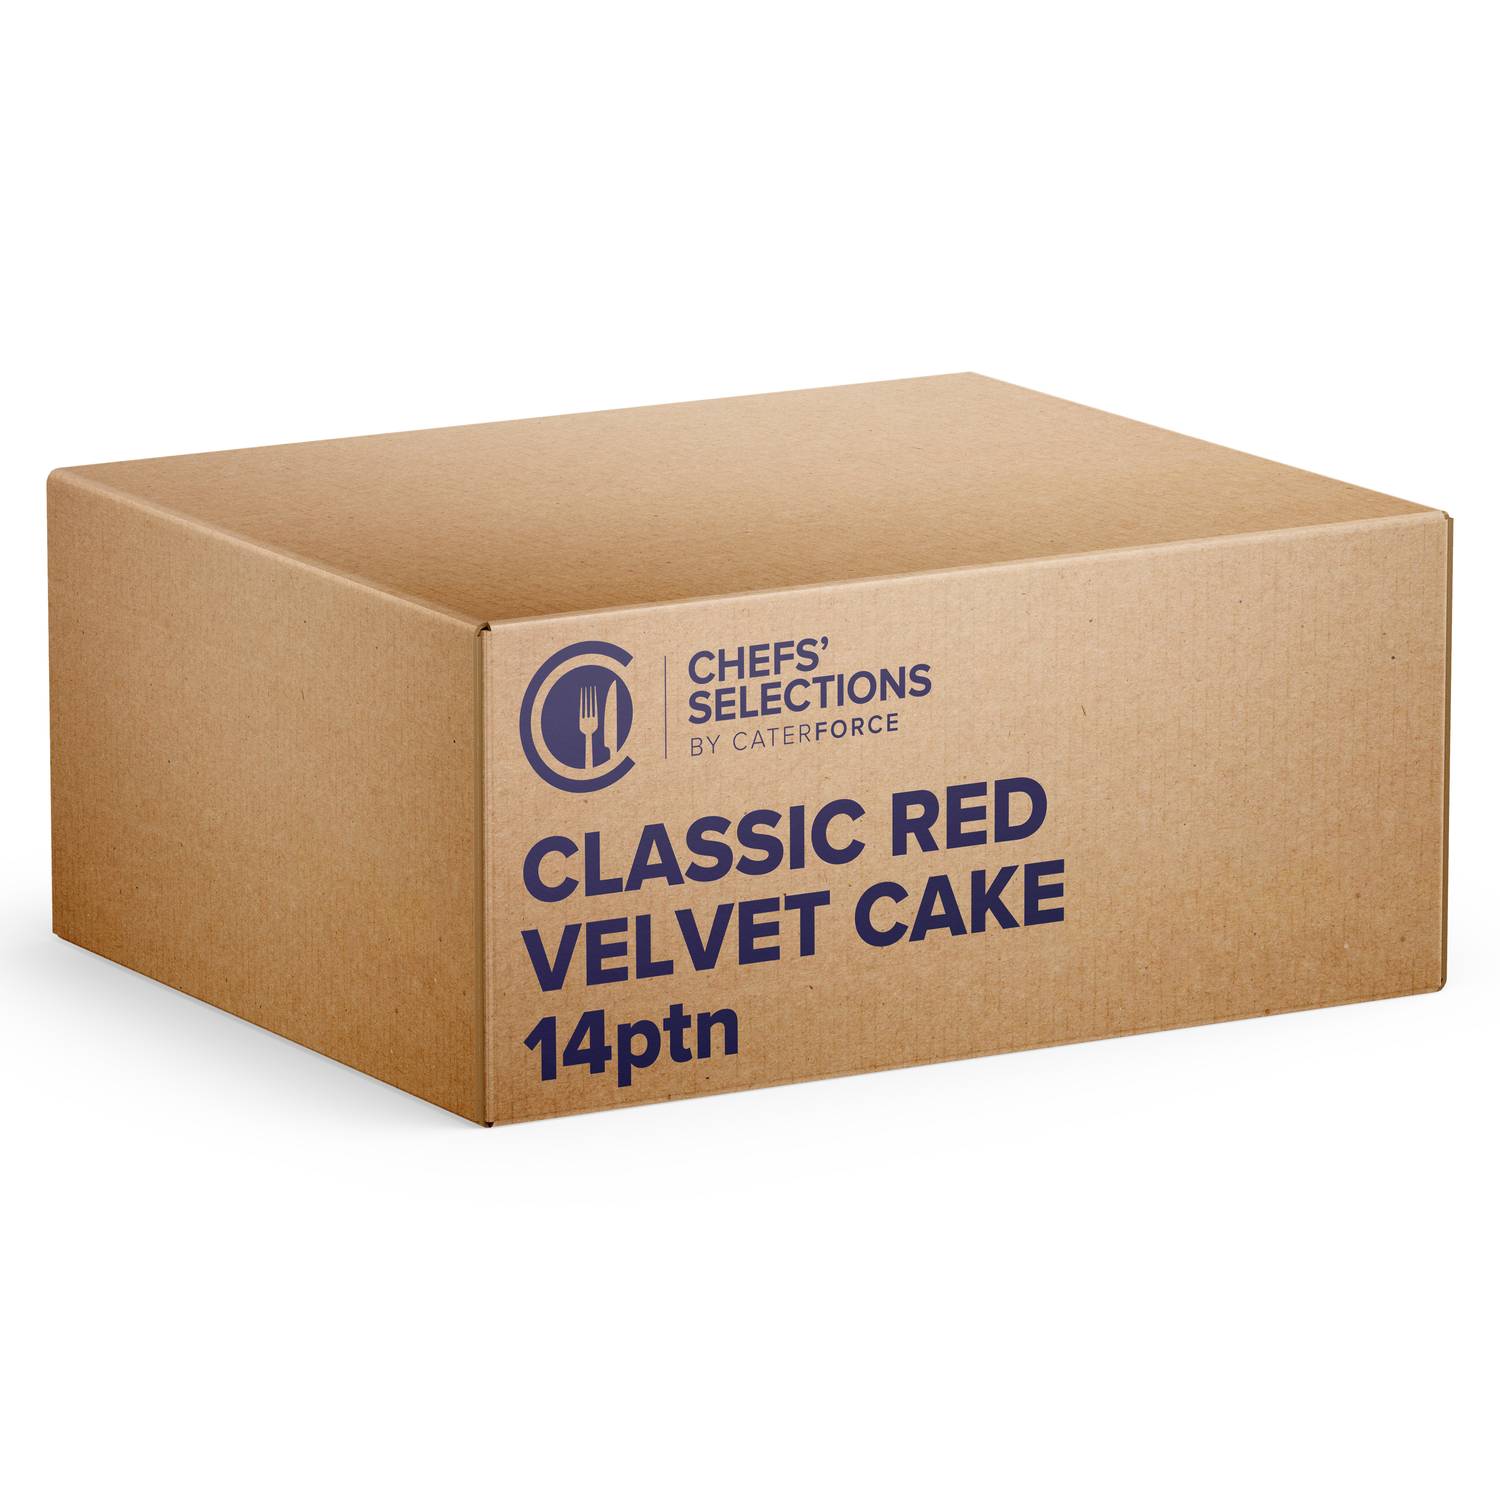 Chefs’ Selections Classic Red Velvet Cake (1 x 14p/ptn)